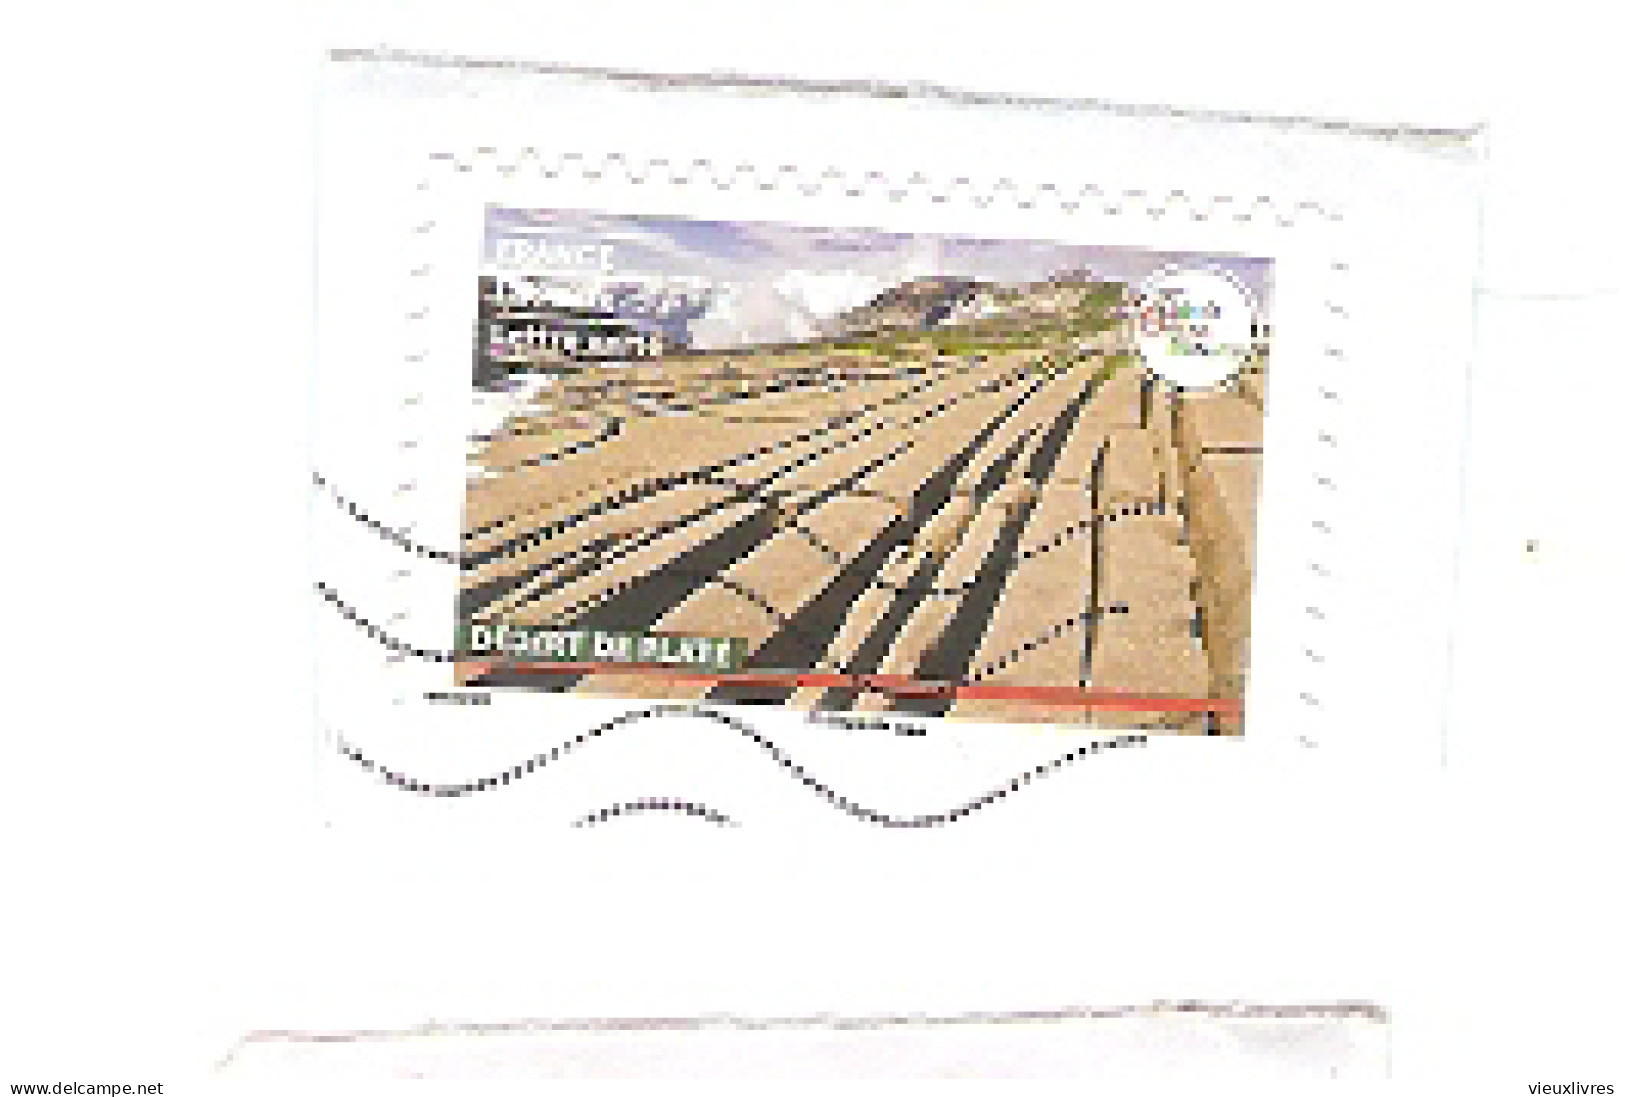 Lot de 24 timbres autocollants sur fragments Phare Tatous Botticelli (Vénus) Cerises Zimbabwe